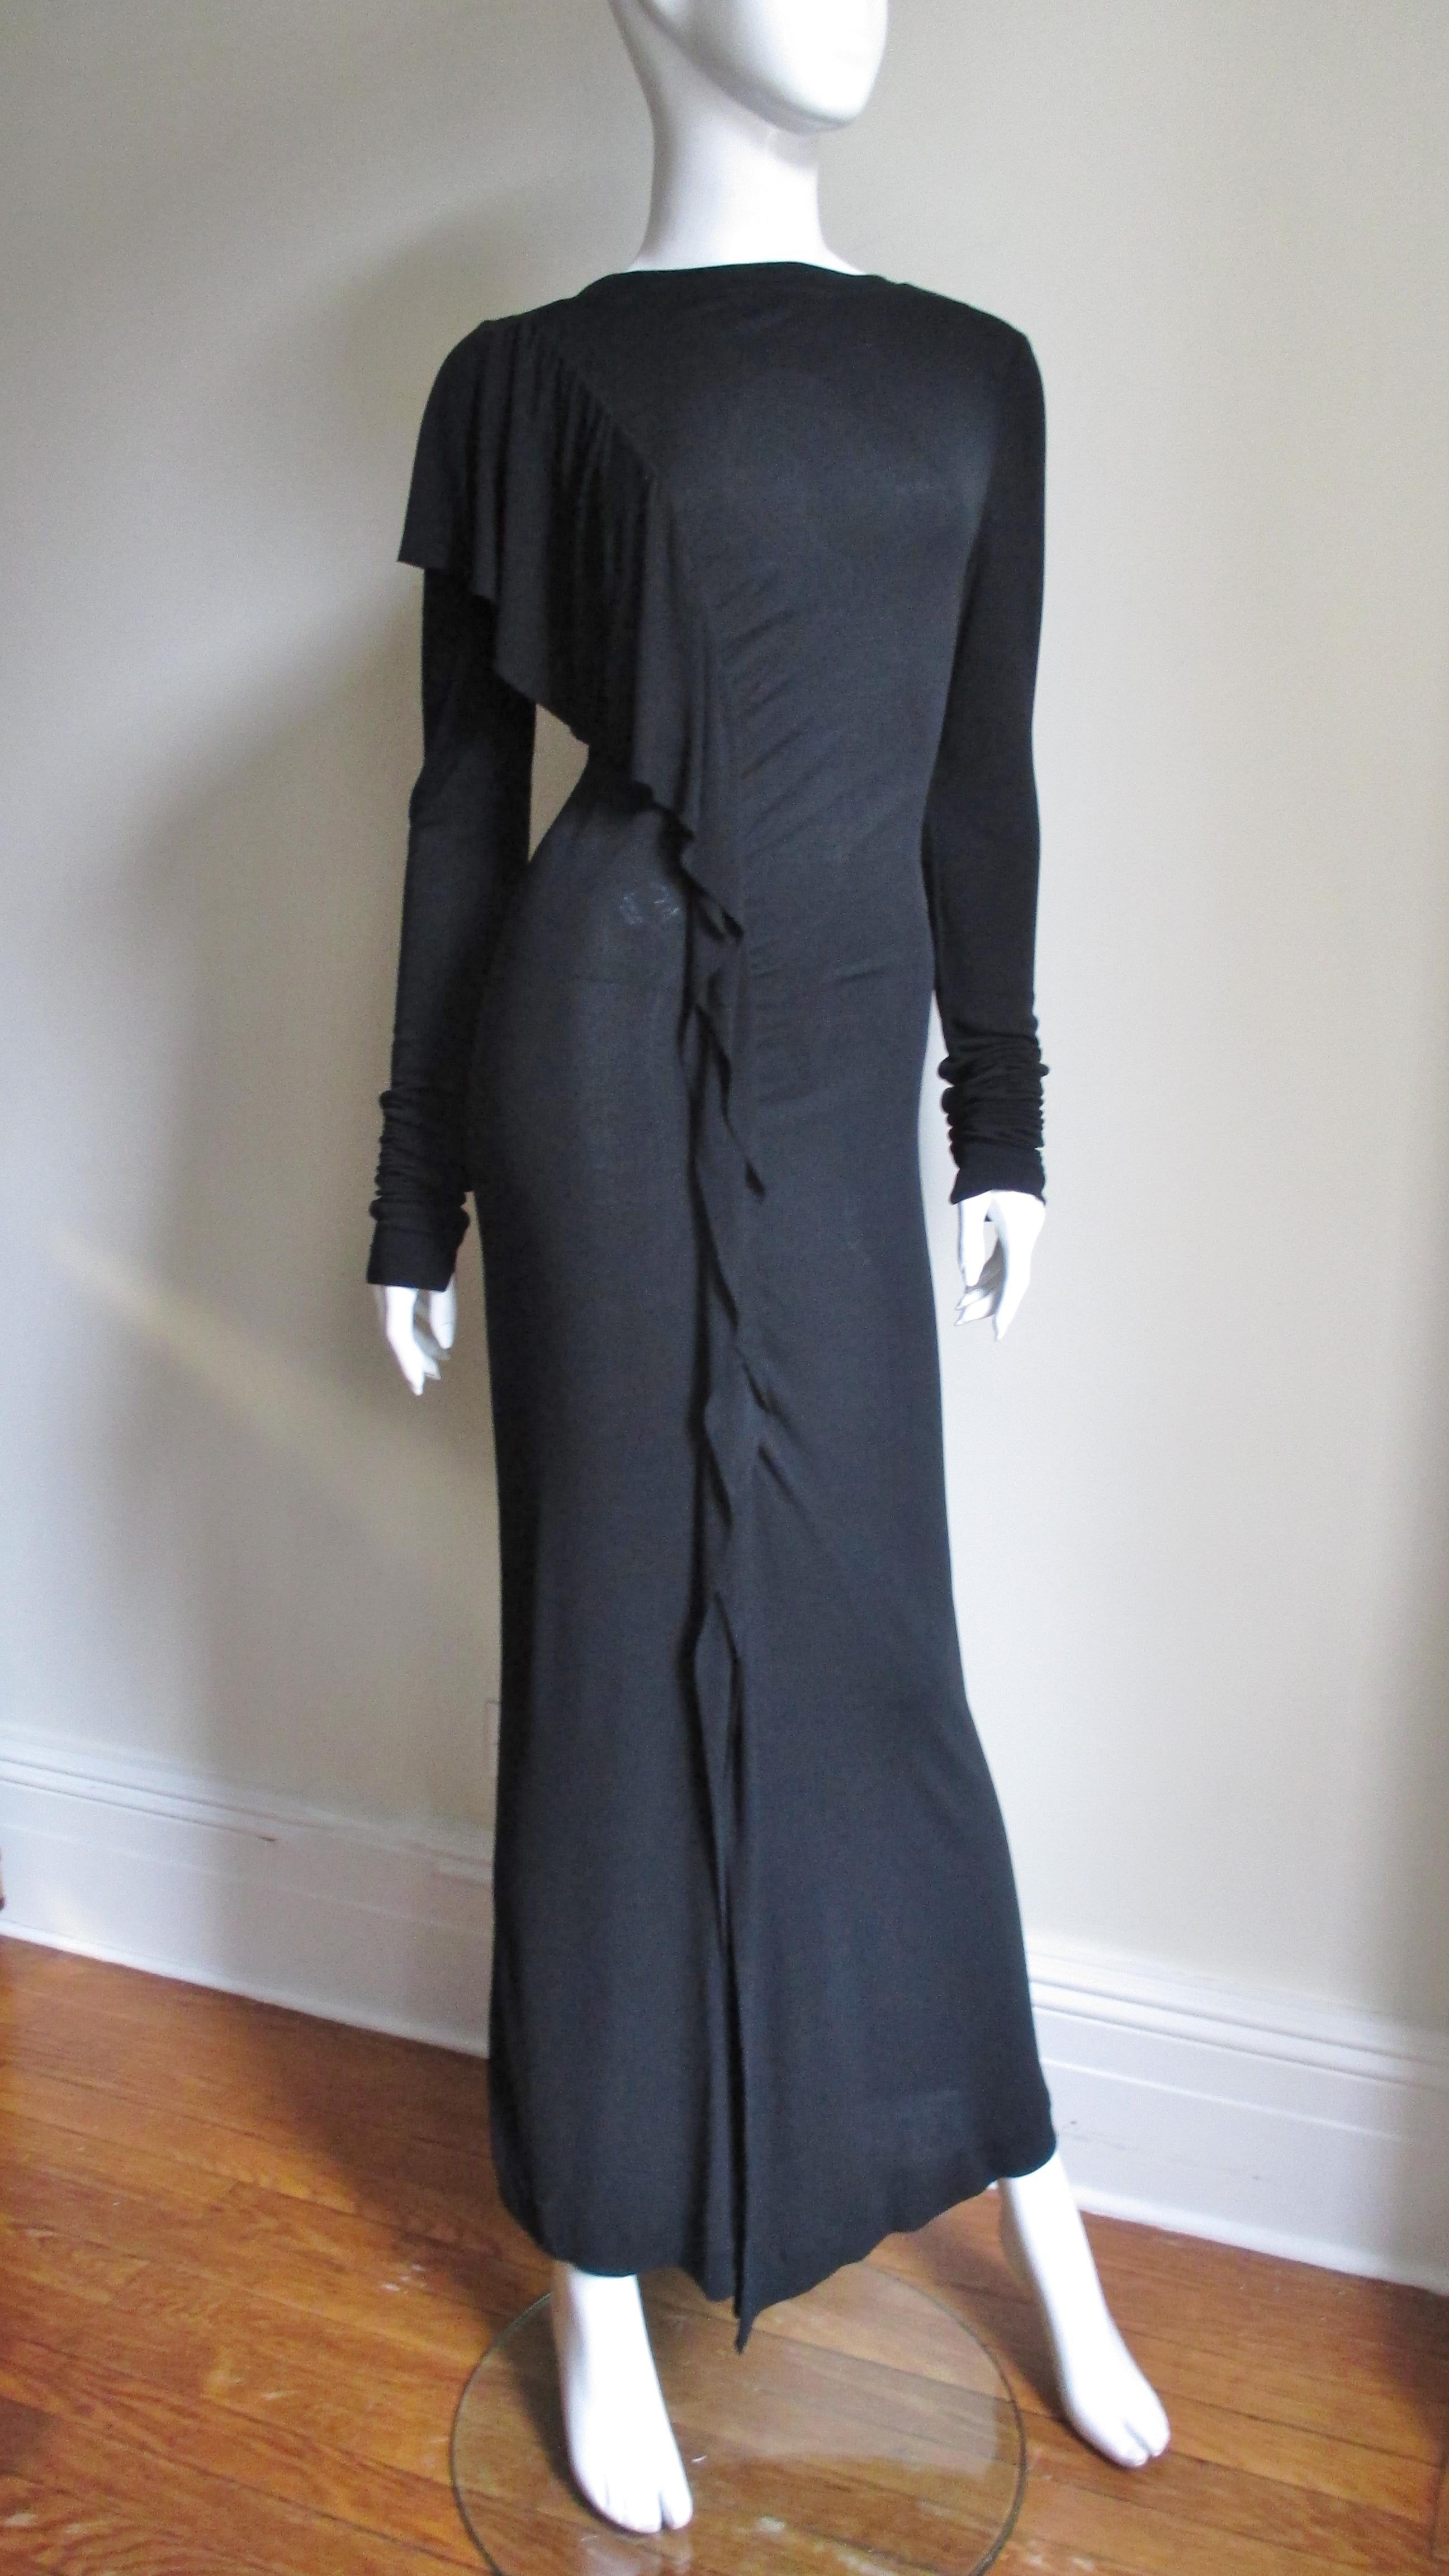 Ein fabelhaftes schwarzes Kleid aus Seidenjersey von Jean Paul Gaultier.  Es ist halb tailliert, hat einen Bateau-Ausschnitt und eine abgestufte, drapierte Rüsche, die an der vorderen Schulter breiter wird und dann zum Saum hin schmaler wird, der ab